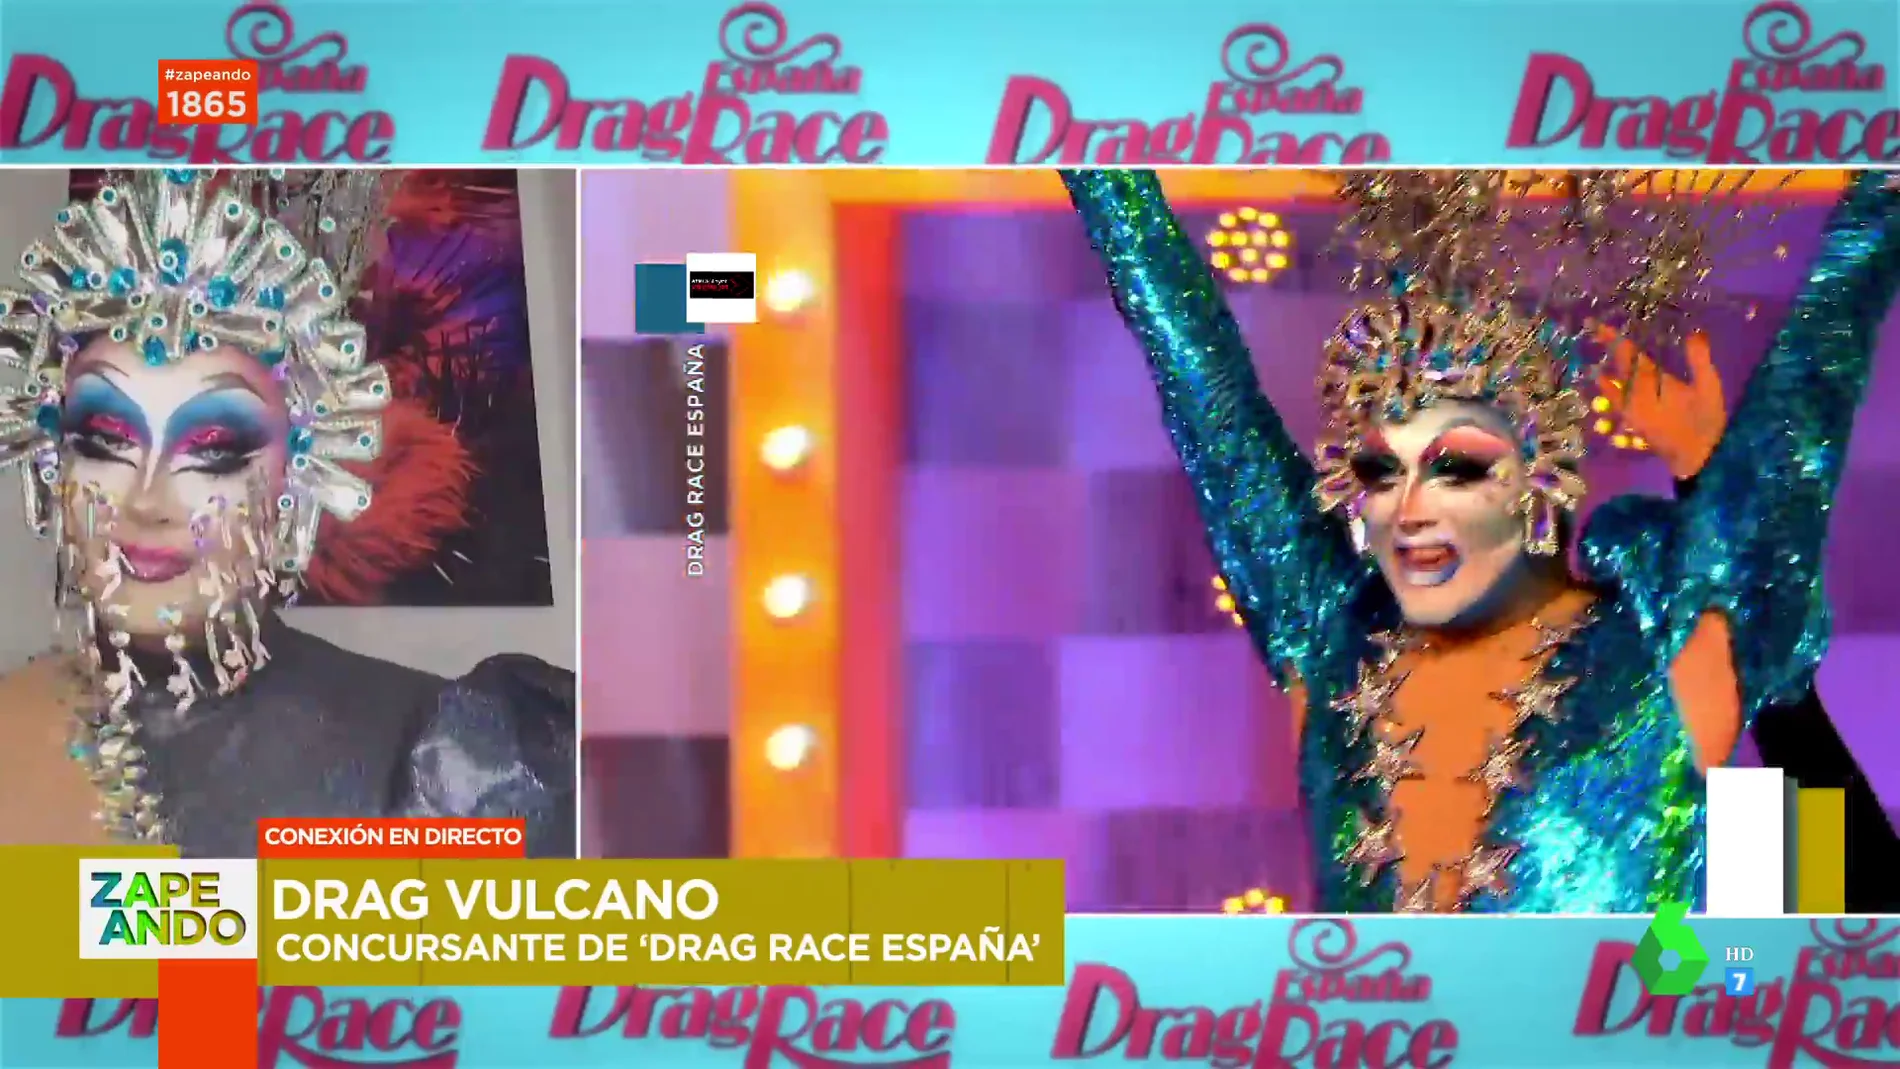 Drag Vulcano confiesa que le pilló "en bragas" su eliminación de Drag Race: "Me dolió"